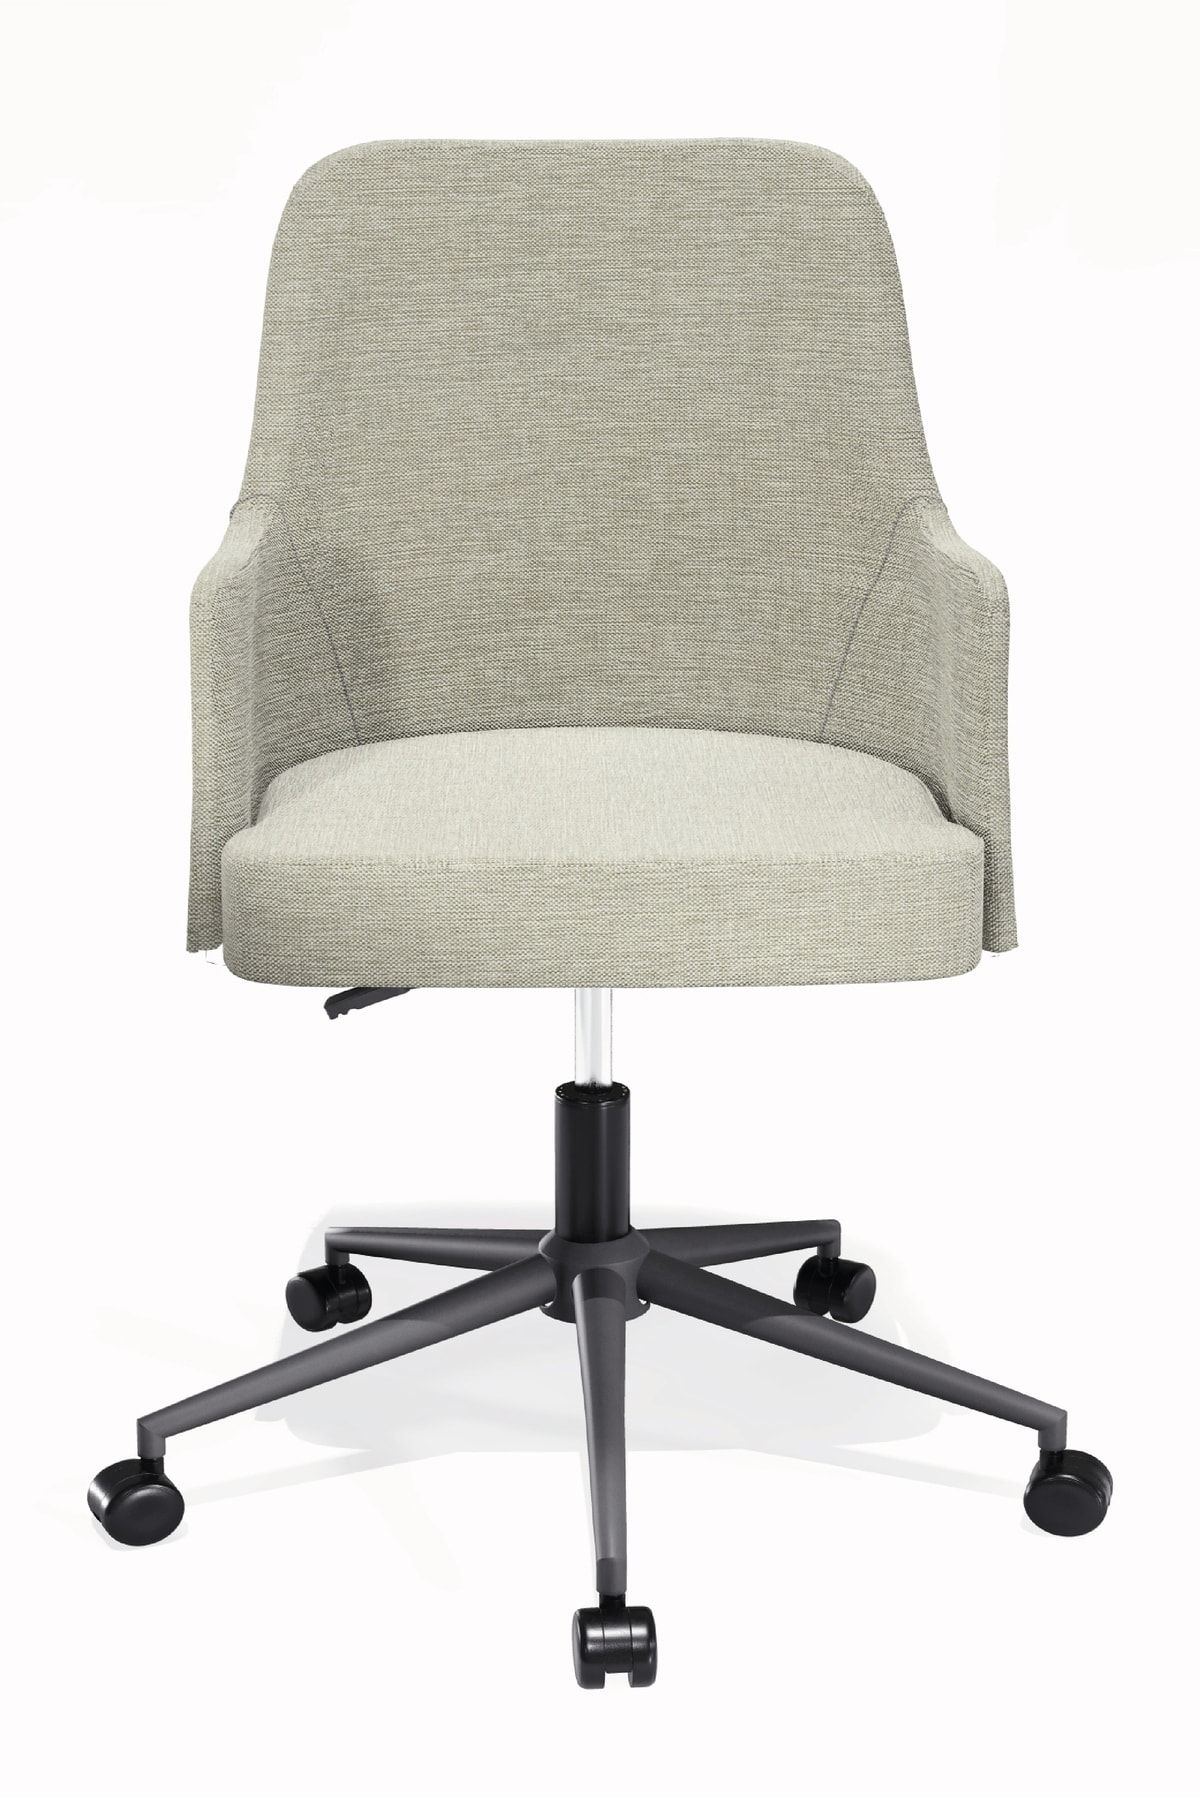 HAUSEBOX Louis Silinebilir Keten Kumaş - Ofis Çalışma Koltuğu & Sandalyesi (krem/siyah Metal Ayak)